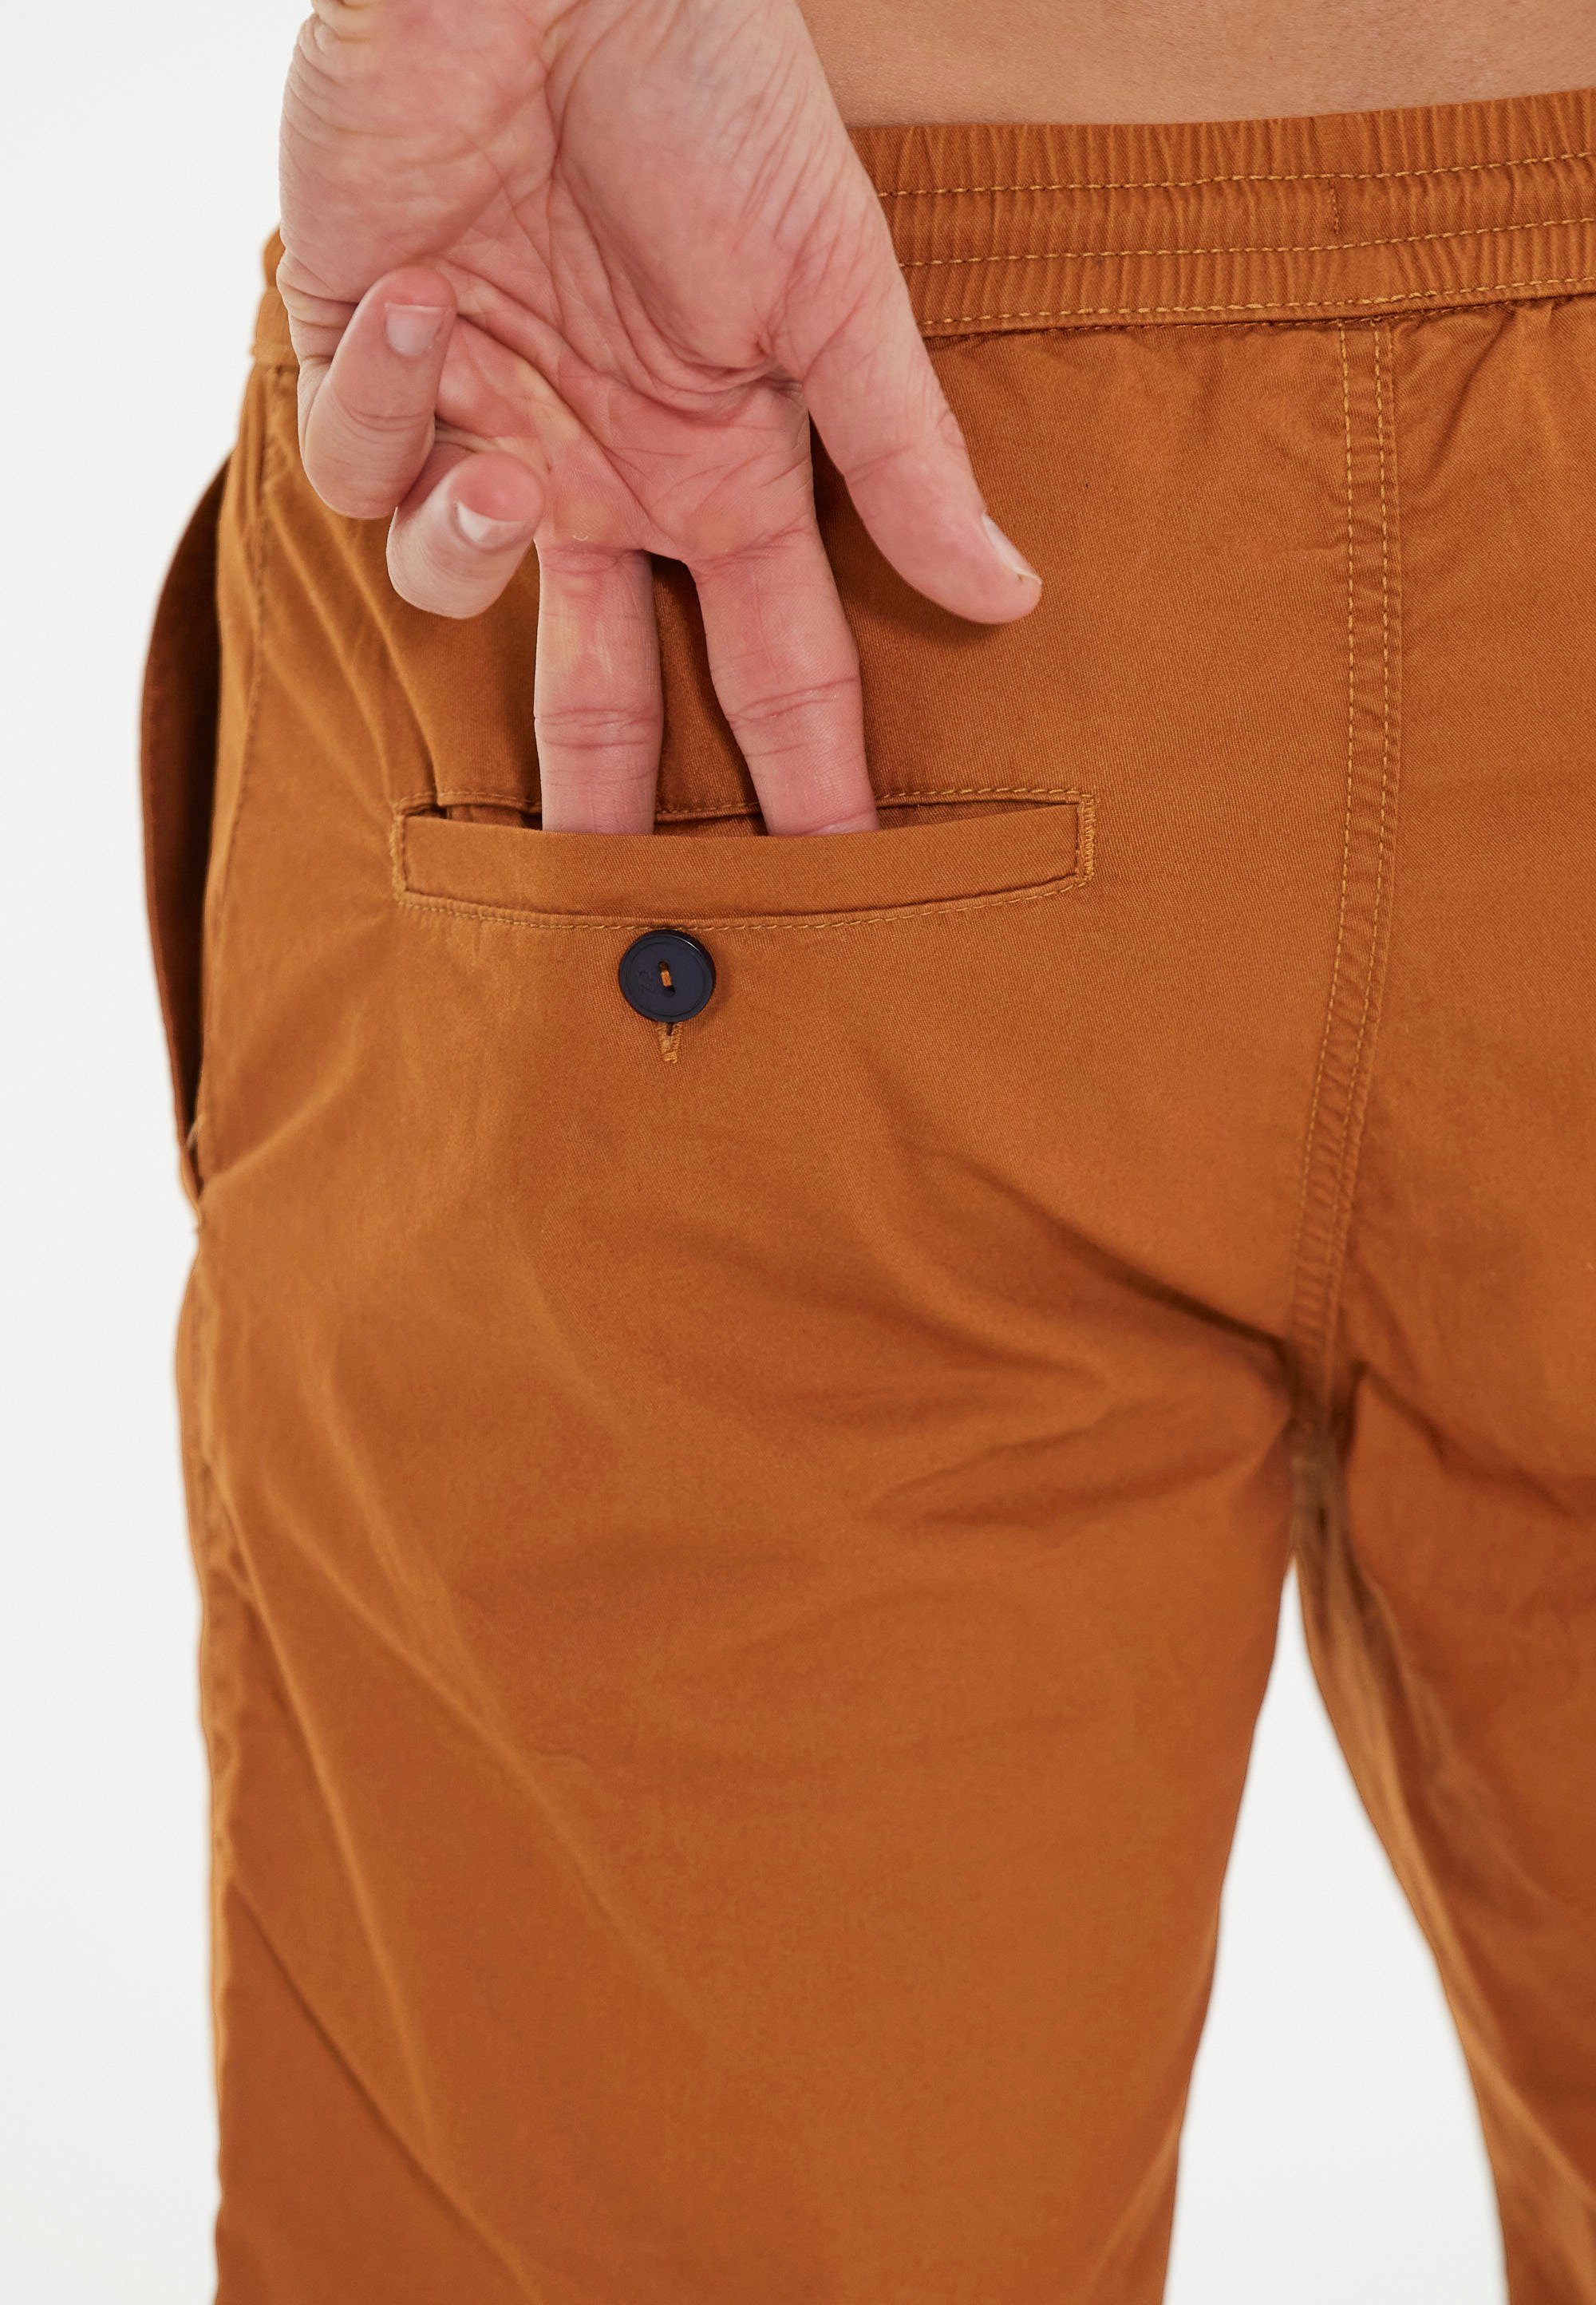 praktischen Shorts orange CRUZ Seitentaschen mit Gilchrest